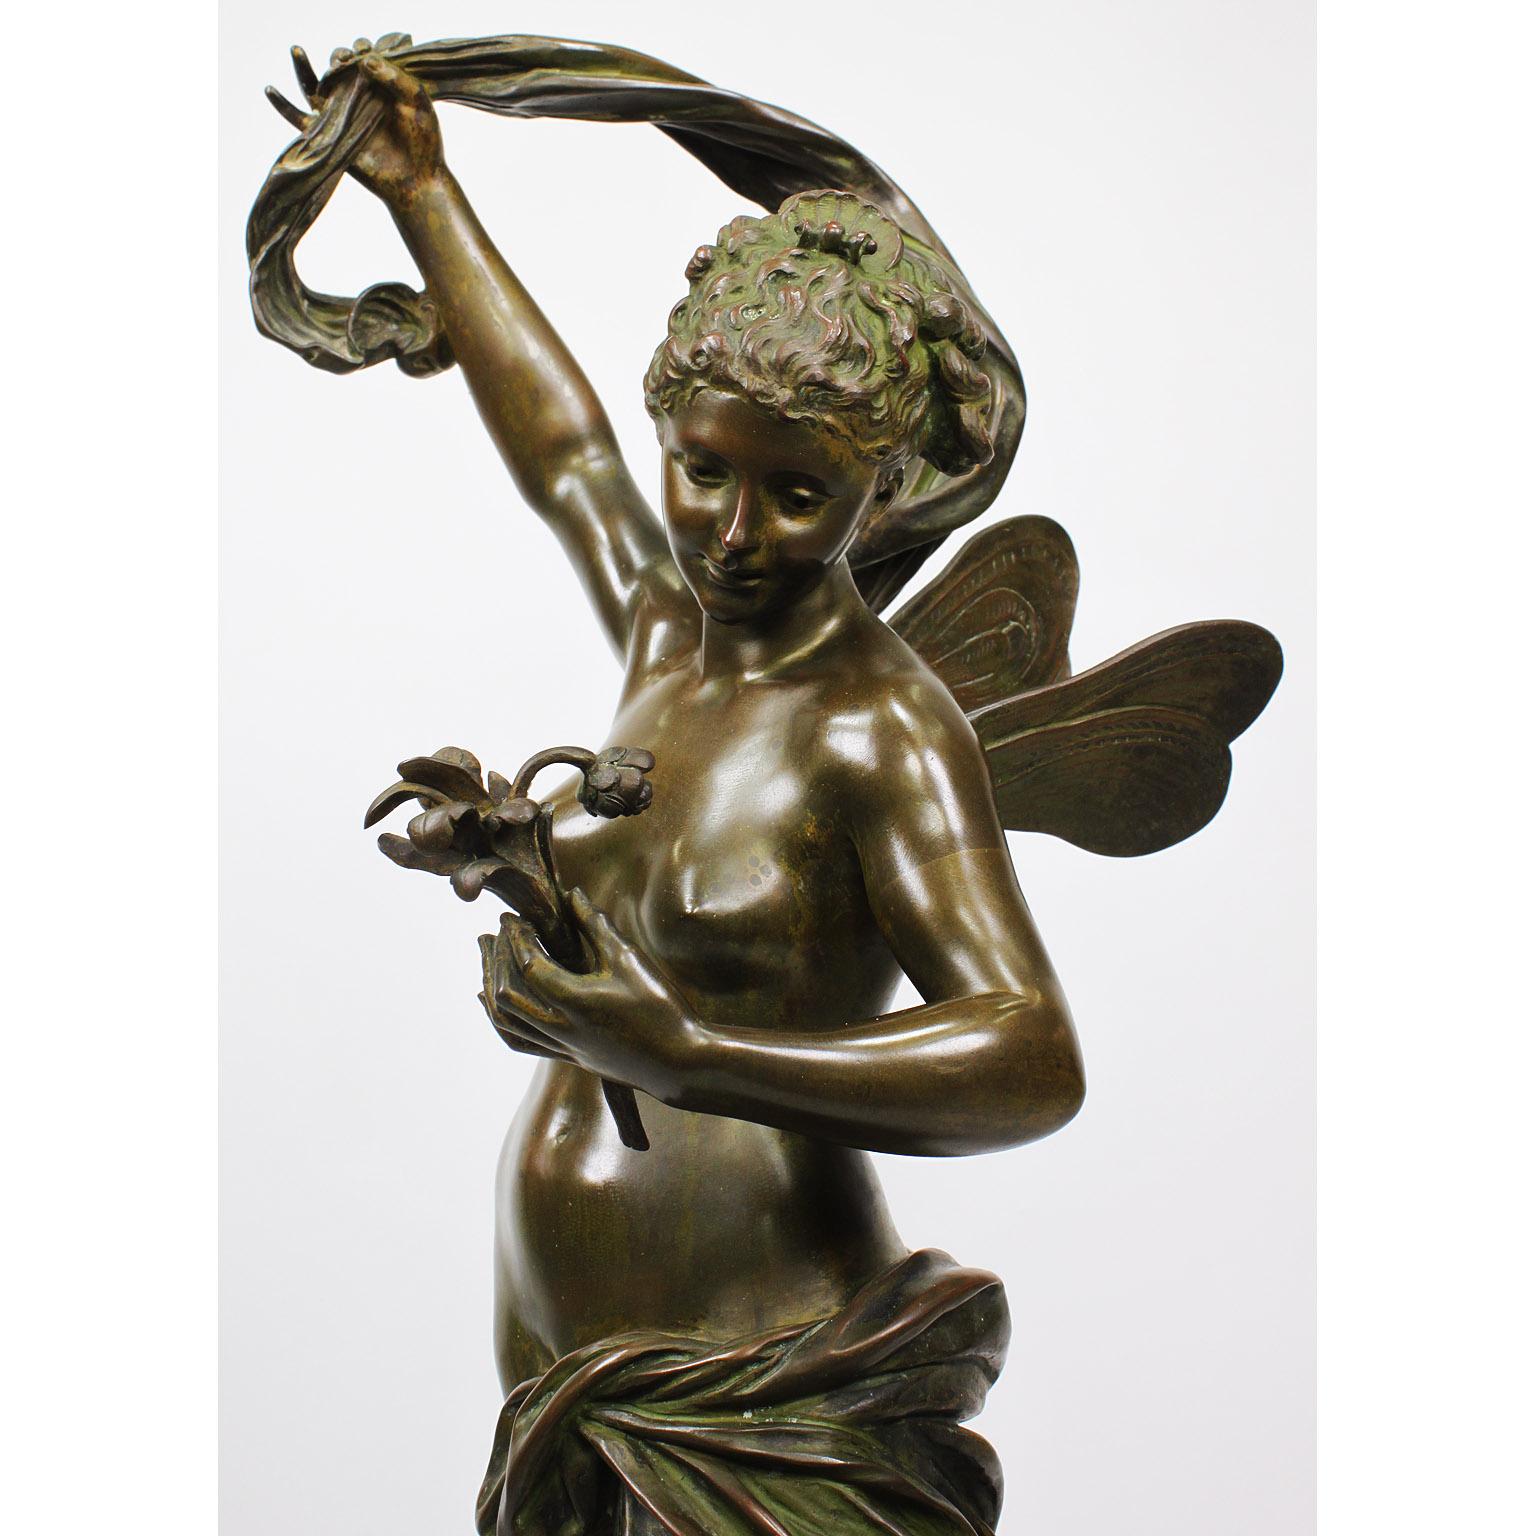 Gilt Luca Madrassi, a Fine Italian Bronze of a Nude 